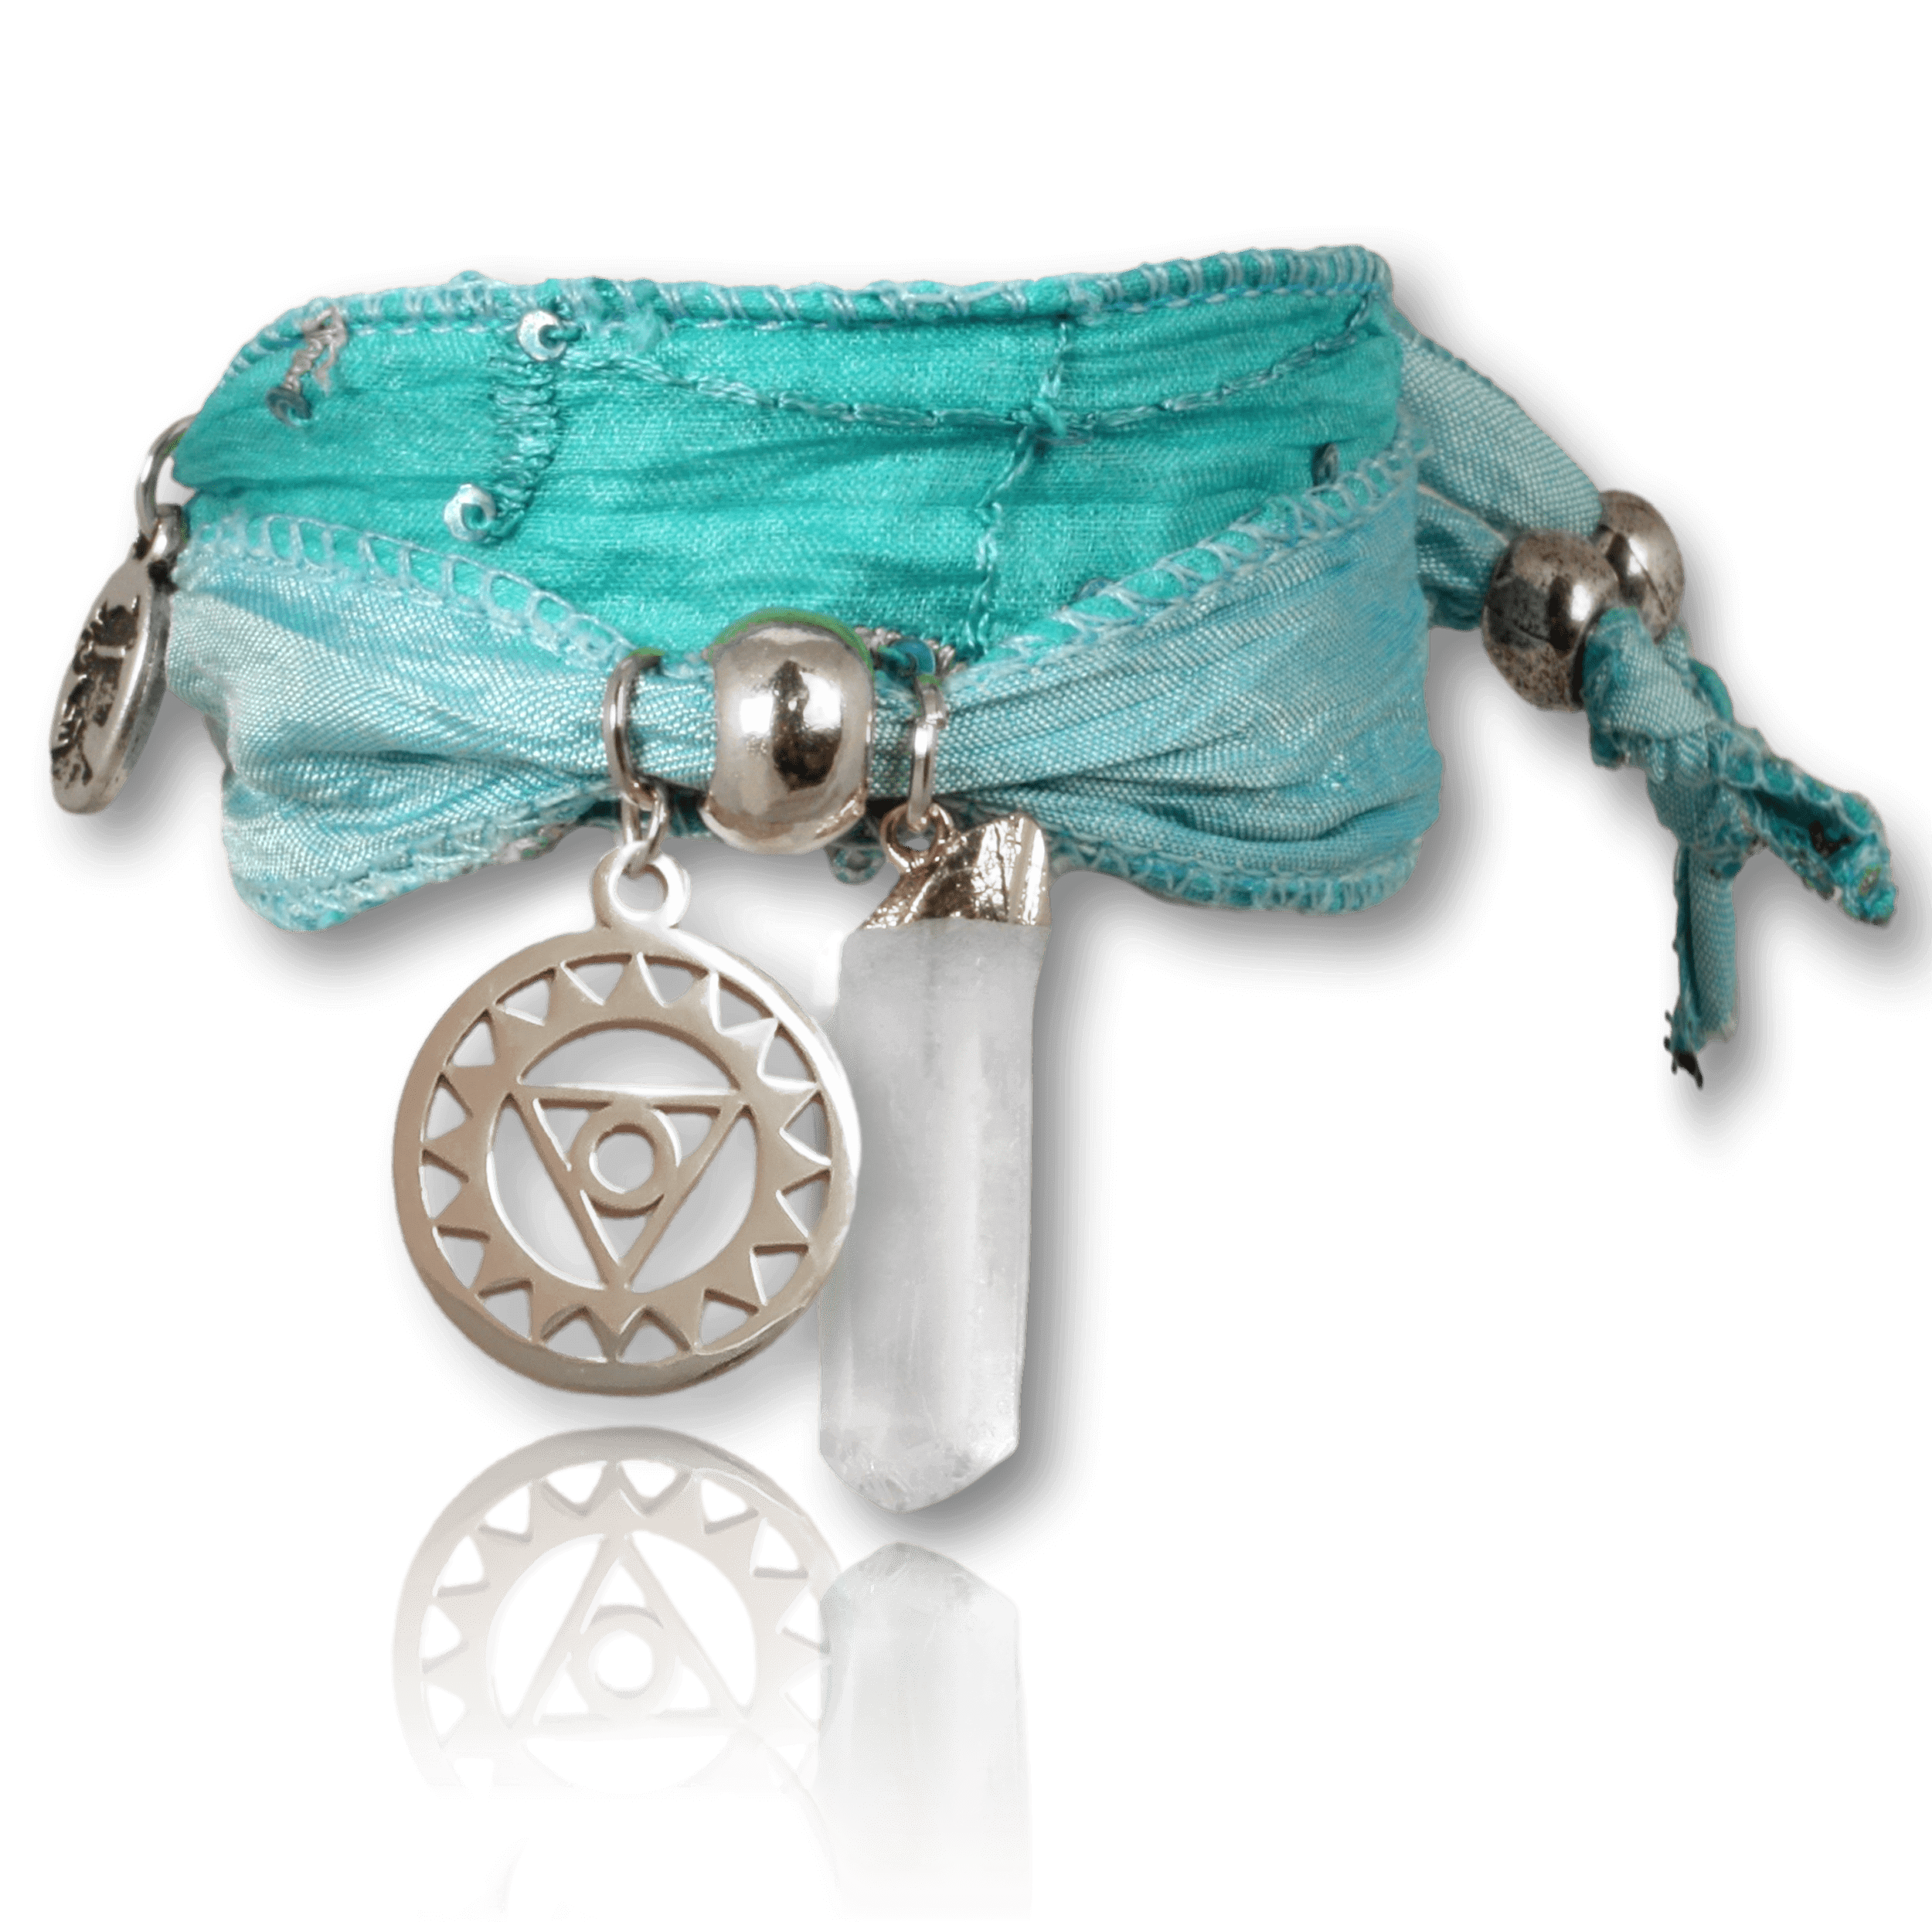 Vishudda versilbert mit Bergkristall Hexagon – Halschakra Armband für Wahrheit & Authentizität